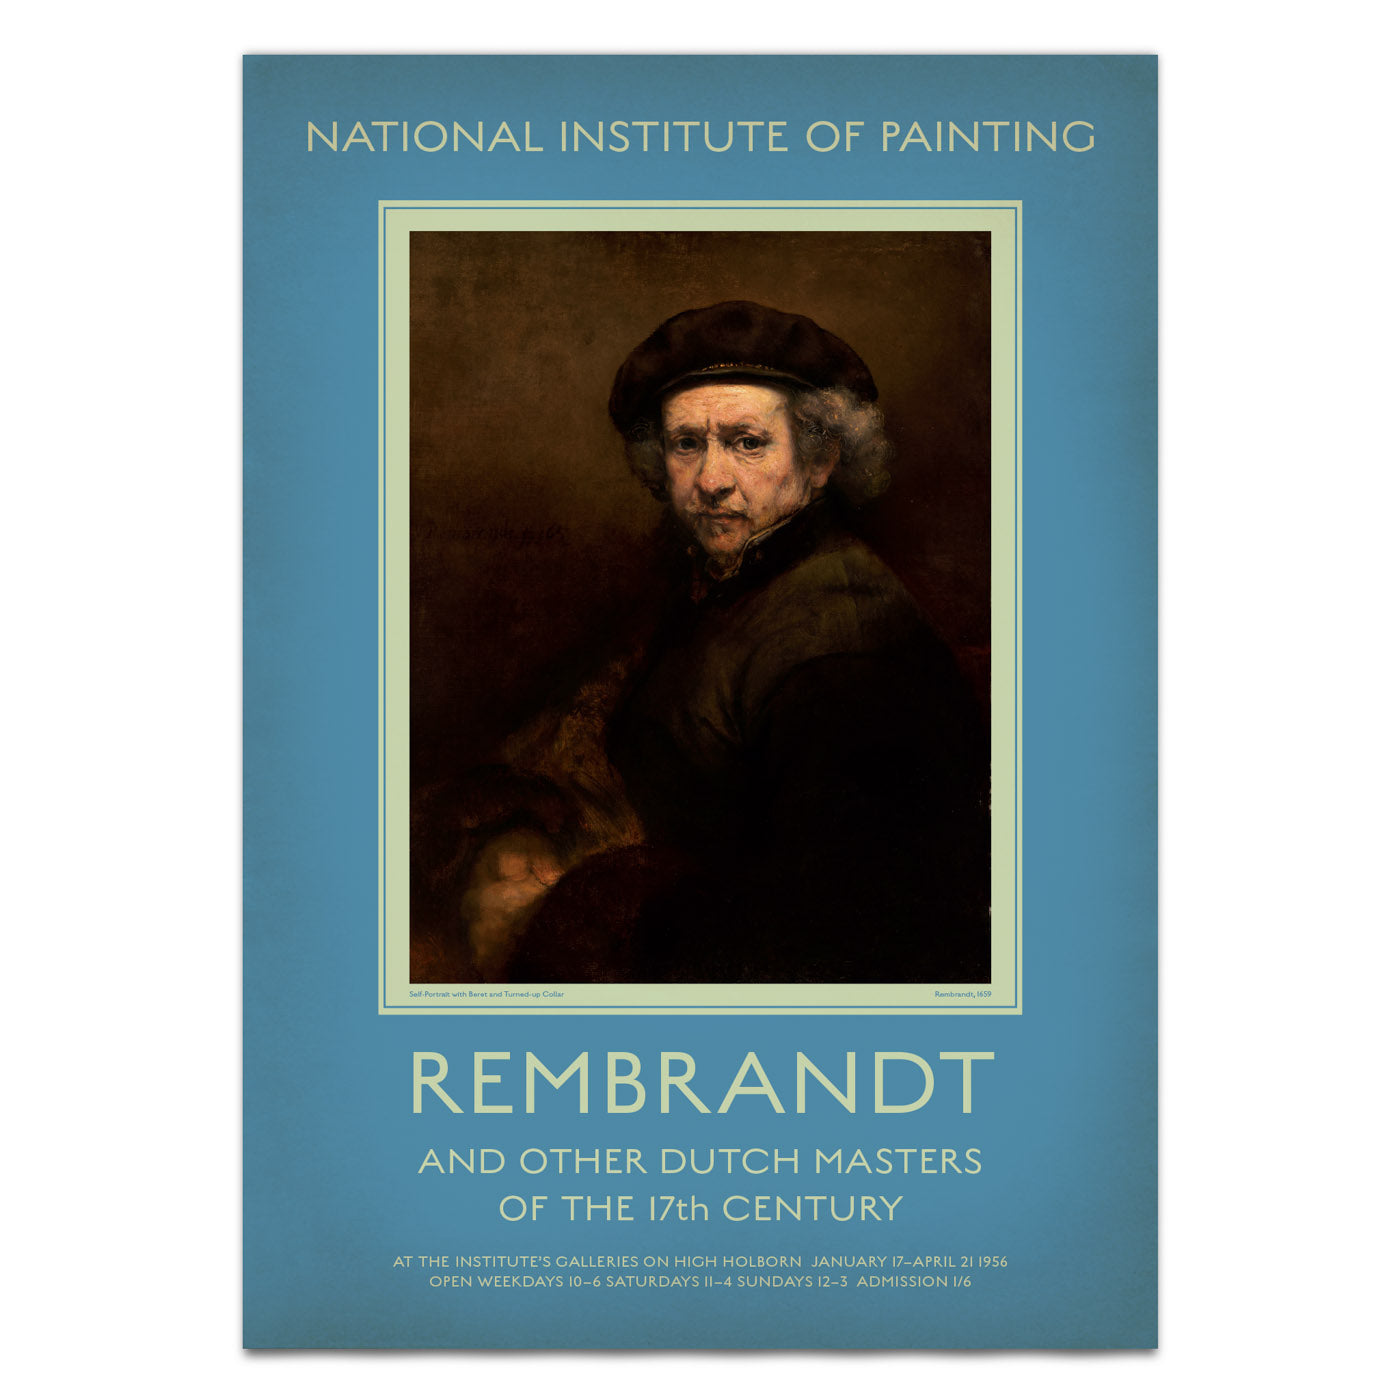 Retro Rembrandt art exhibition poster, simulating mid-century British museum quality.